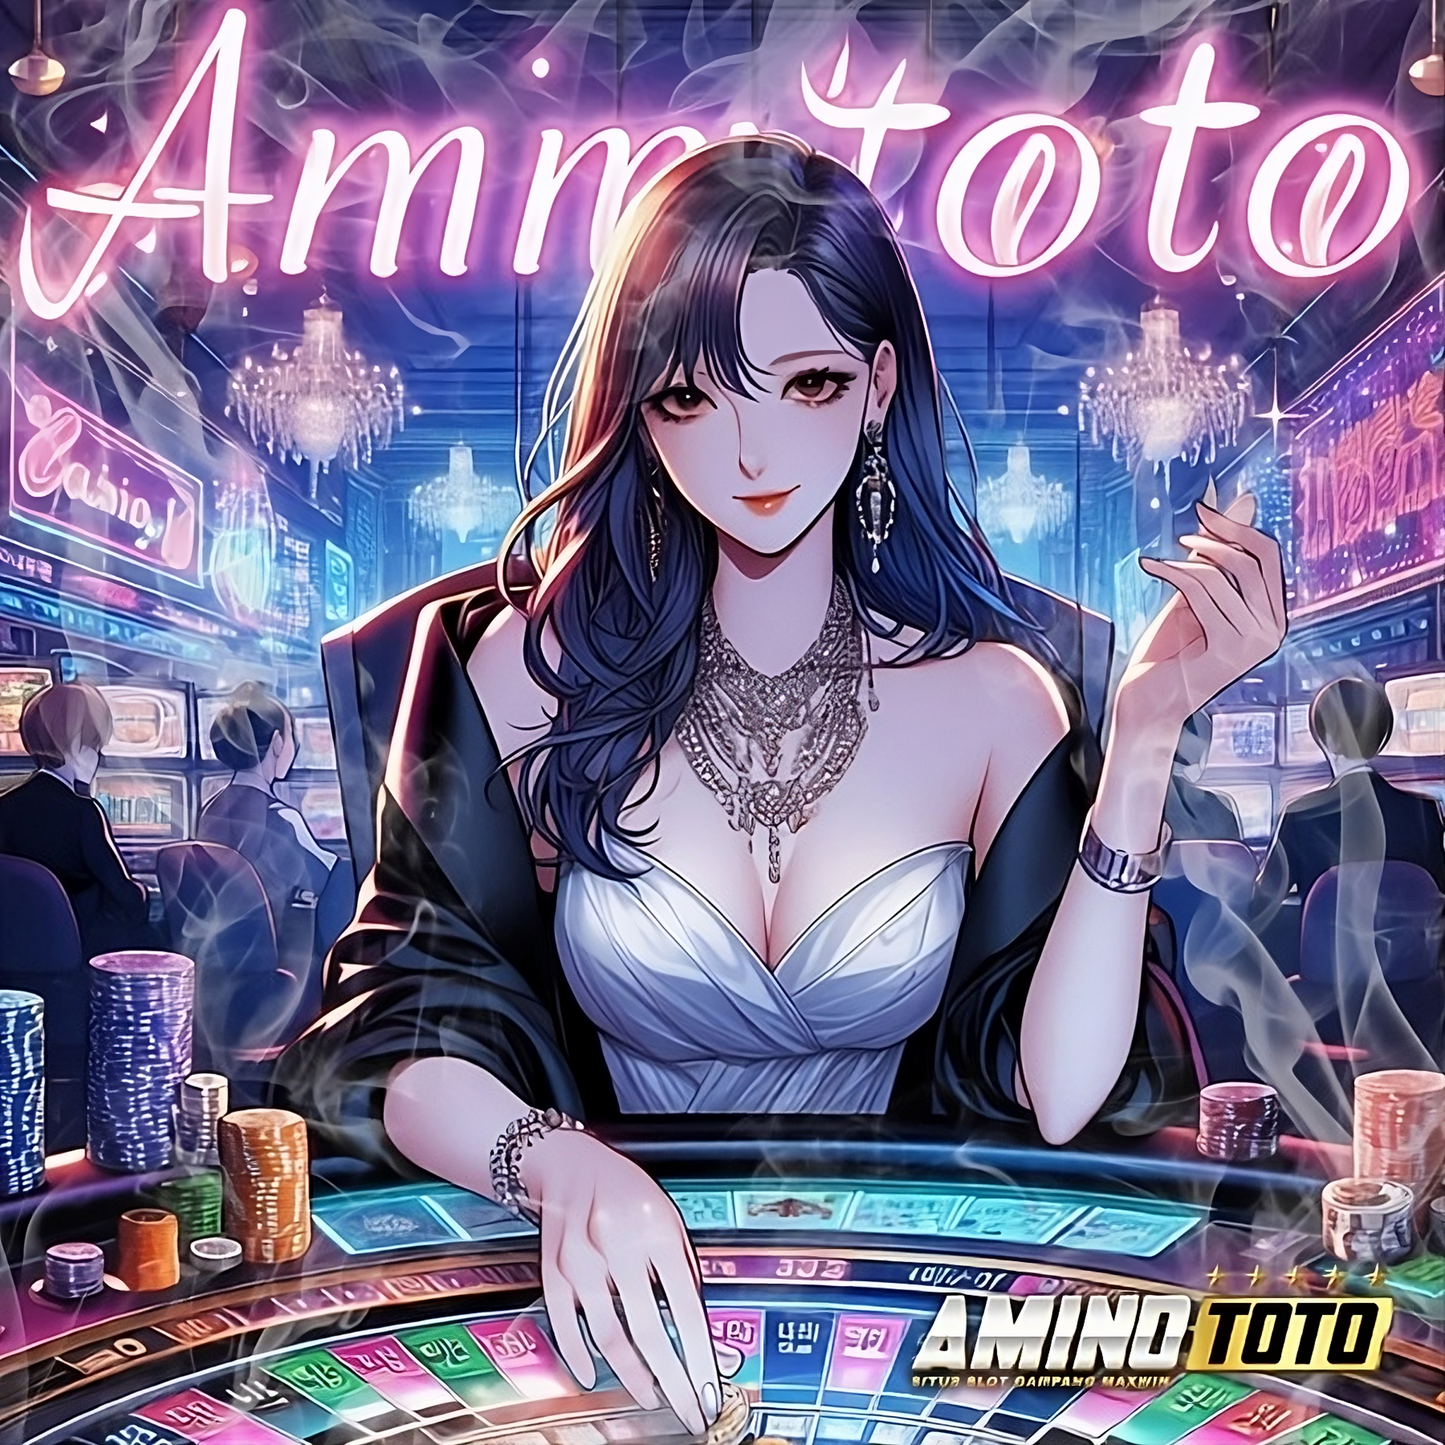 Aminototo | Web Top Up Voucher Game Online Terpercaya.